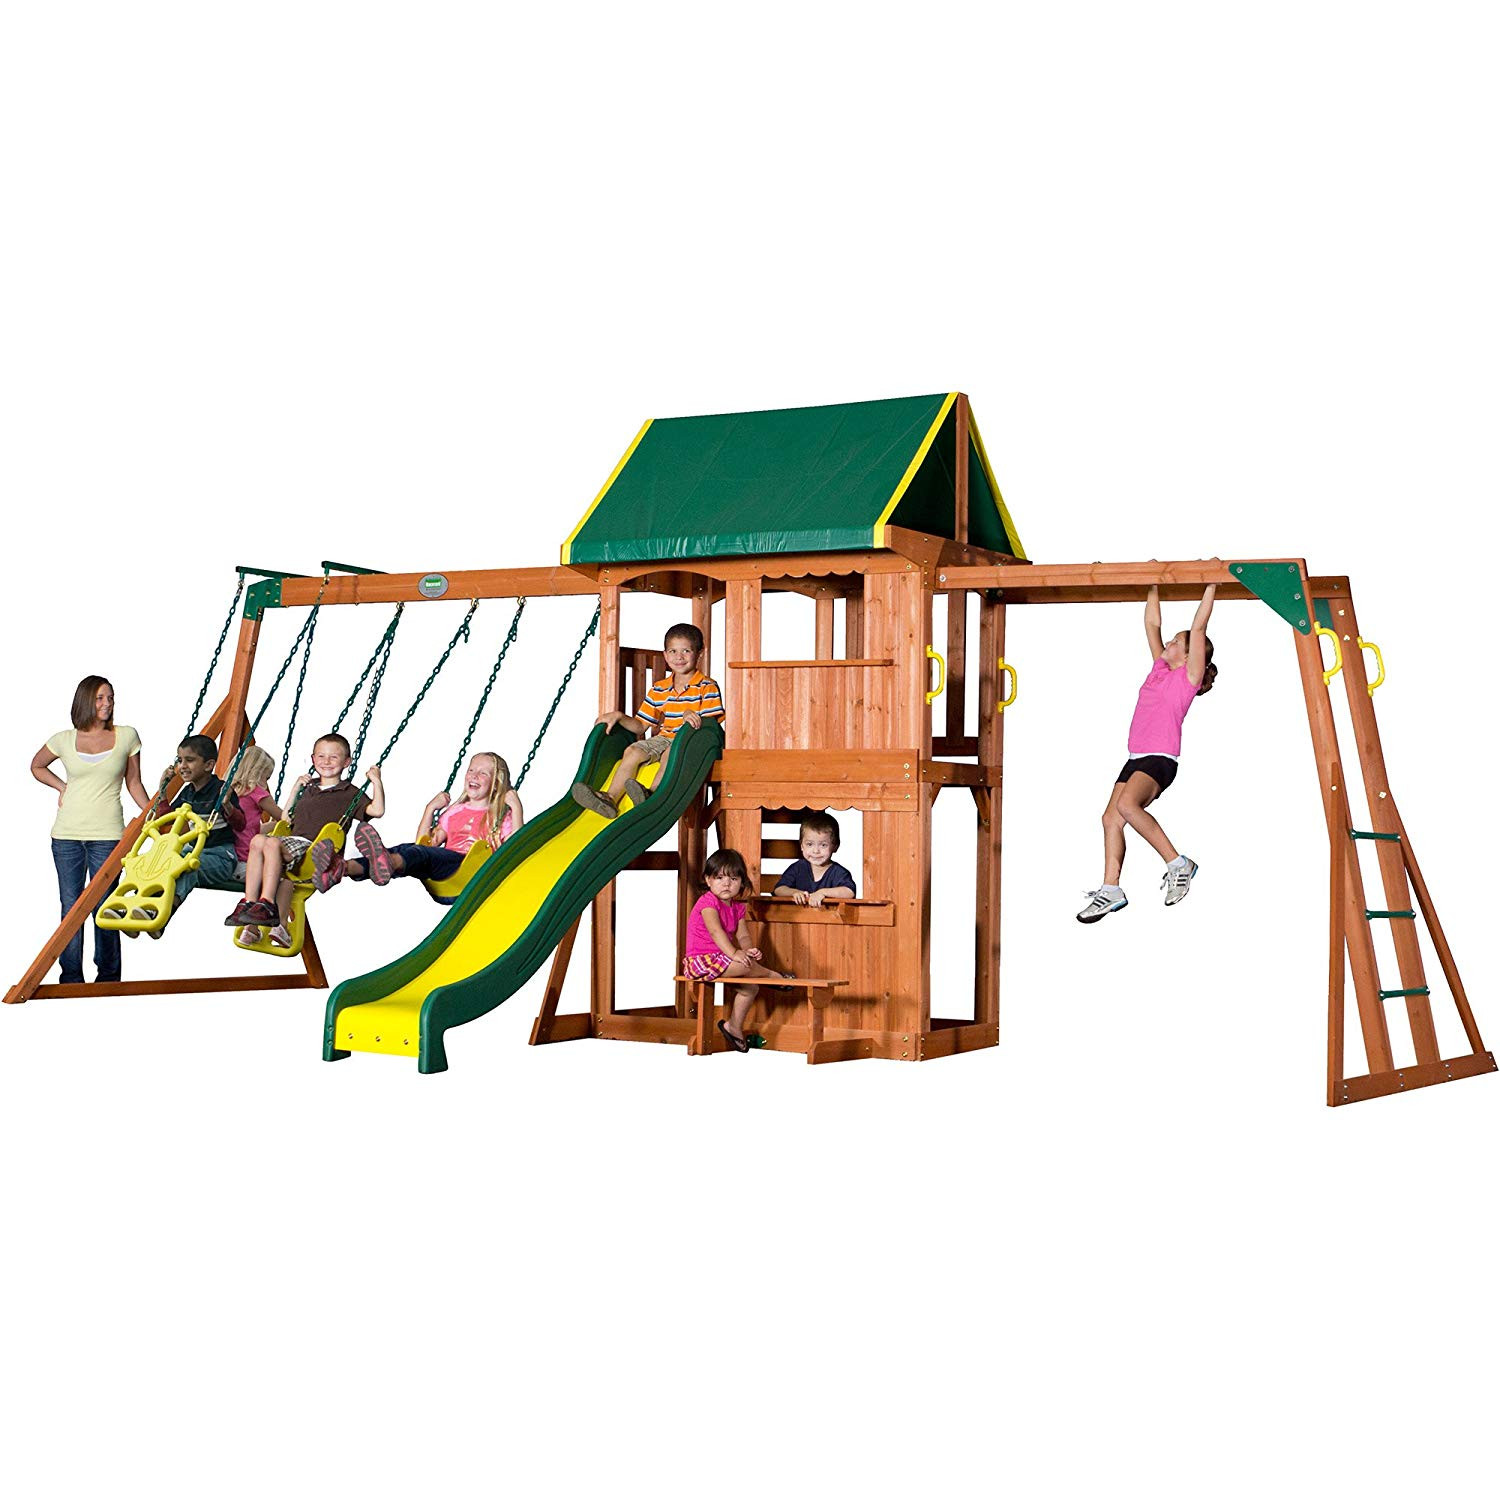 Home Depot Kids Swing Sets
 Outdoor Cedar Wooden Swing Set Kids Play Center Slide